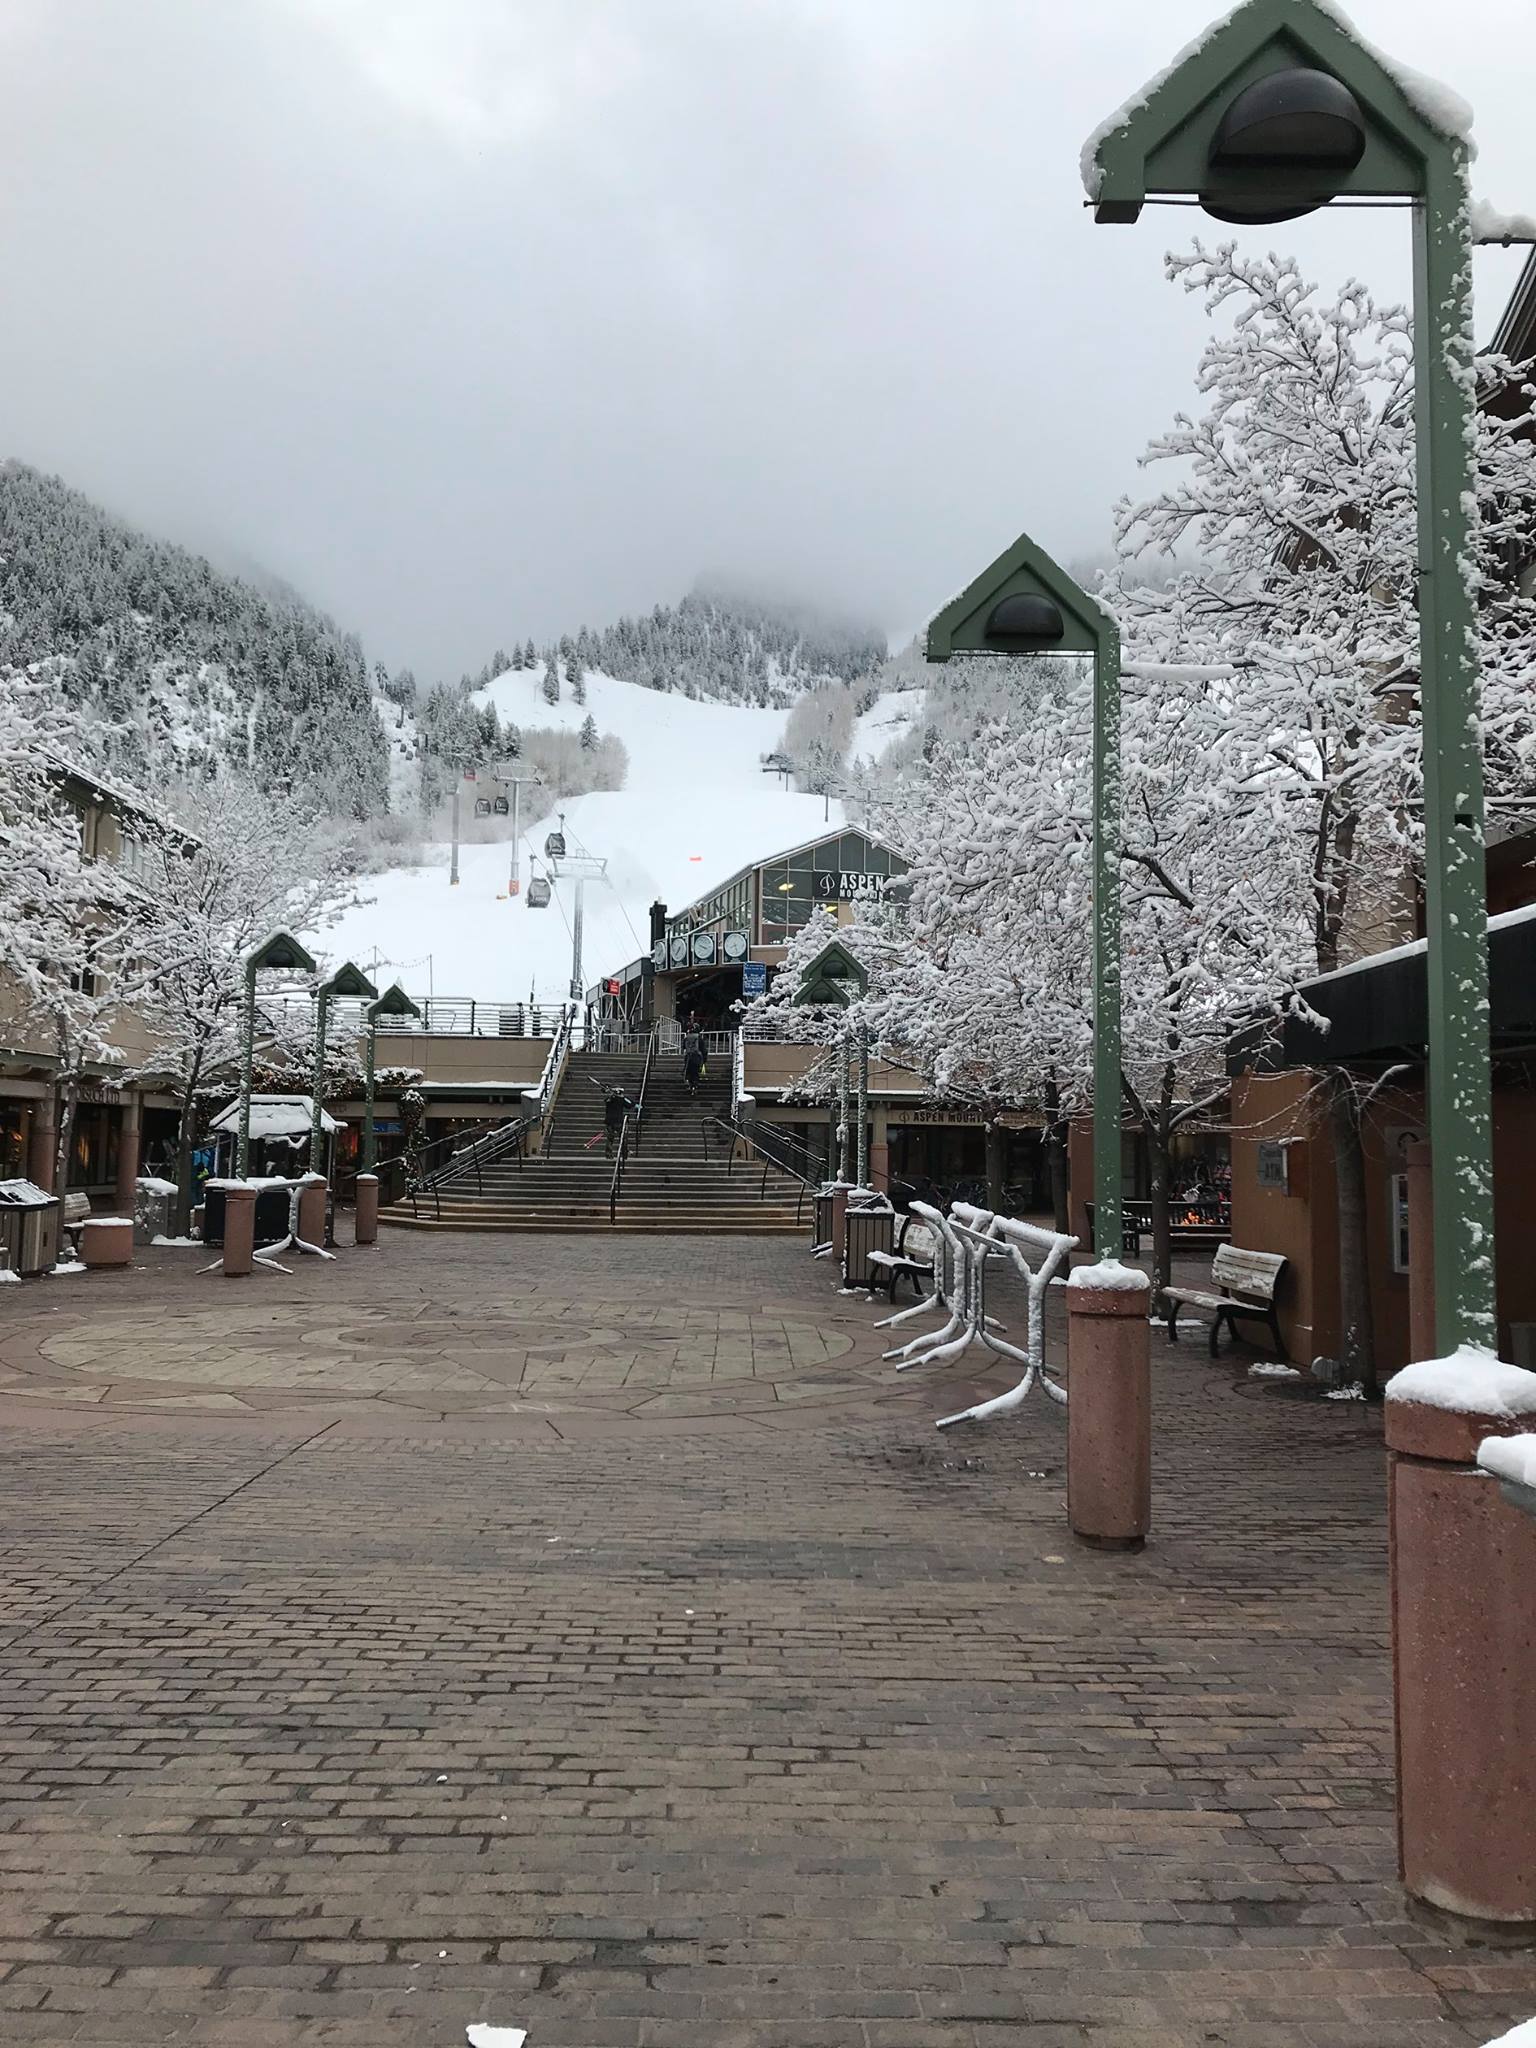 Aspen Ski Areas  Incline Ski & Board Shop